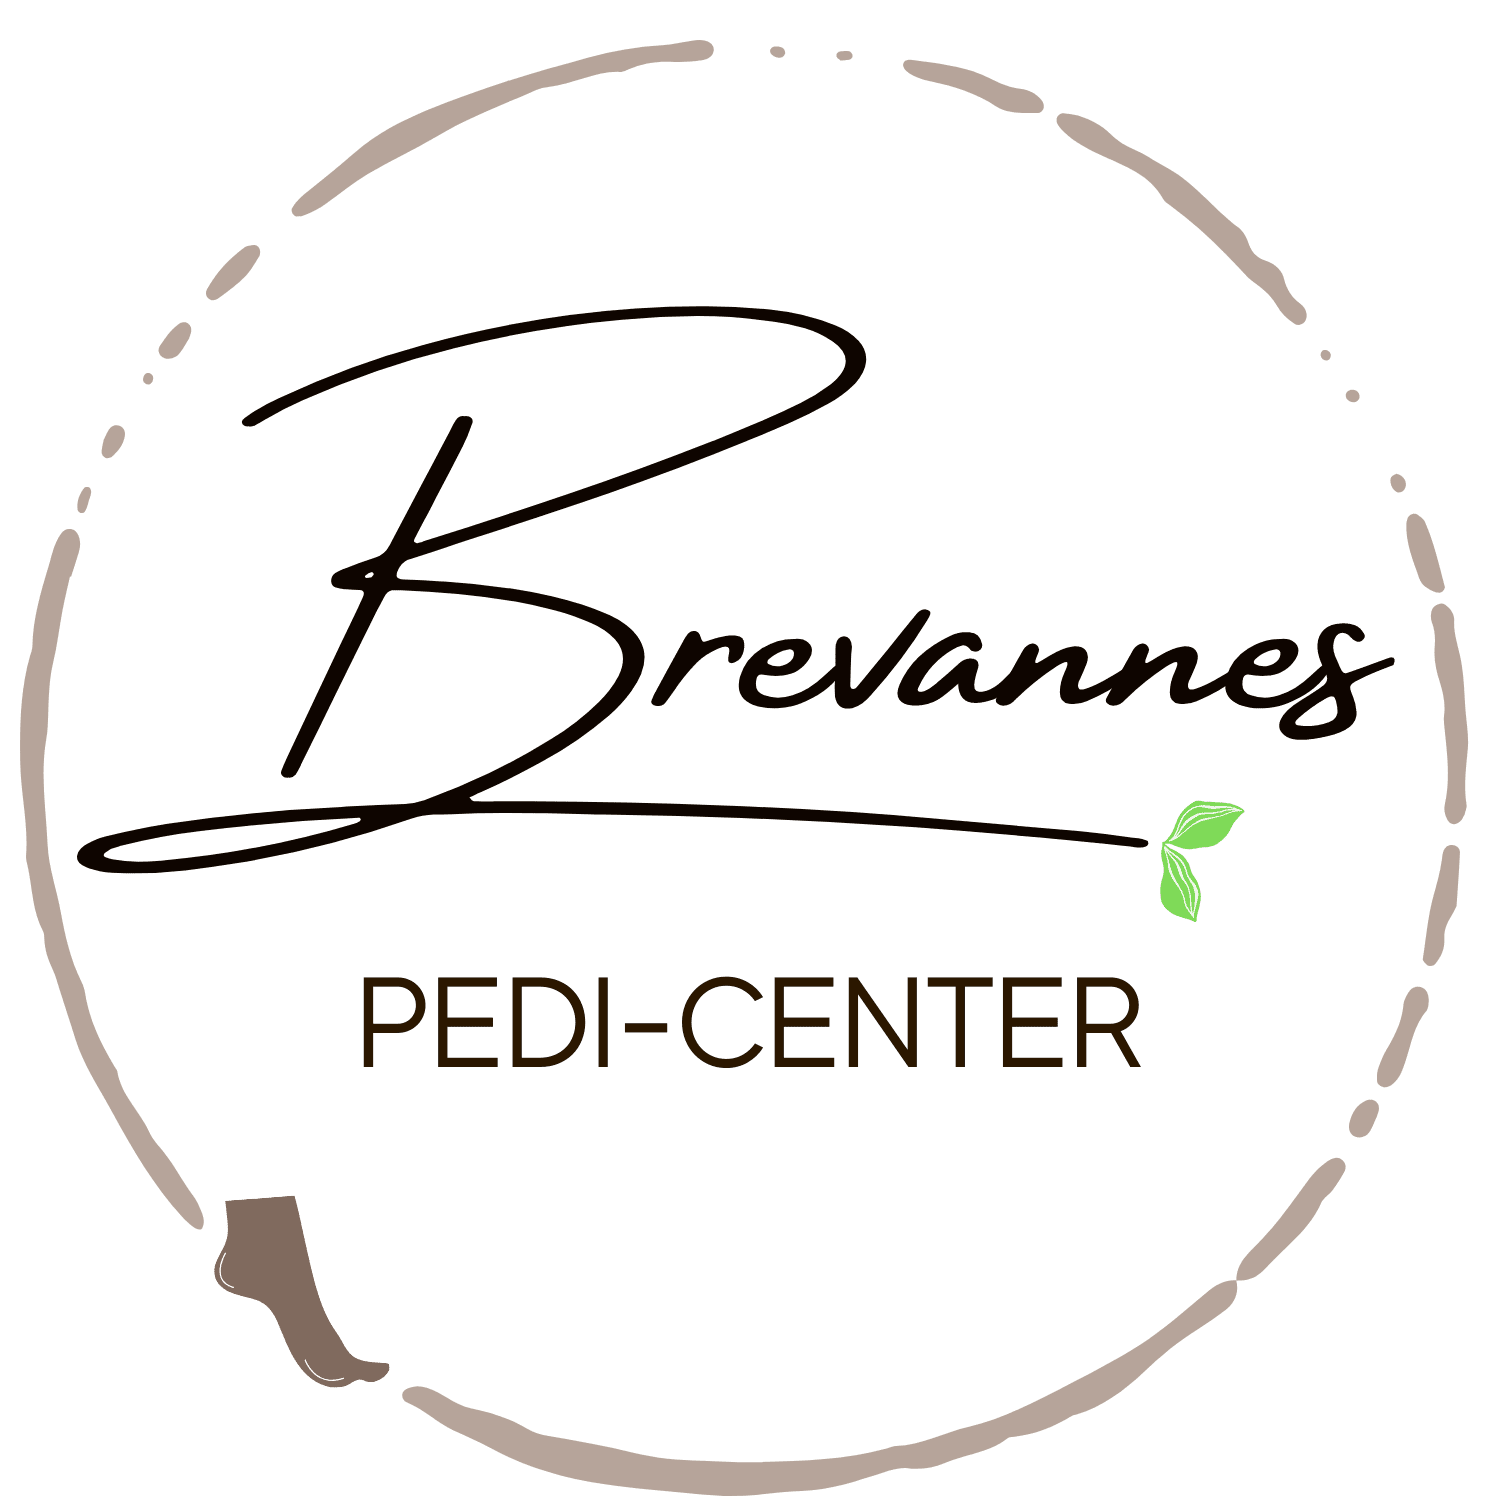 Brevannes Pedi Center